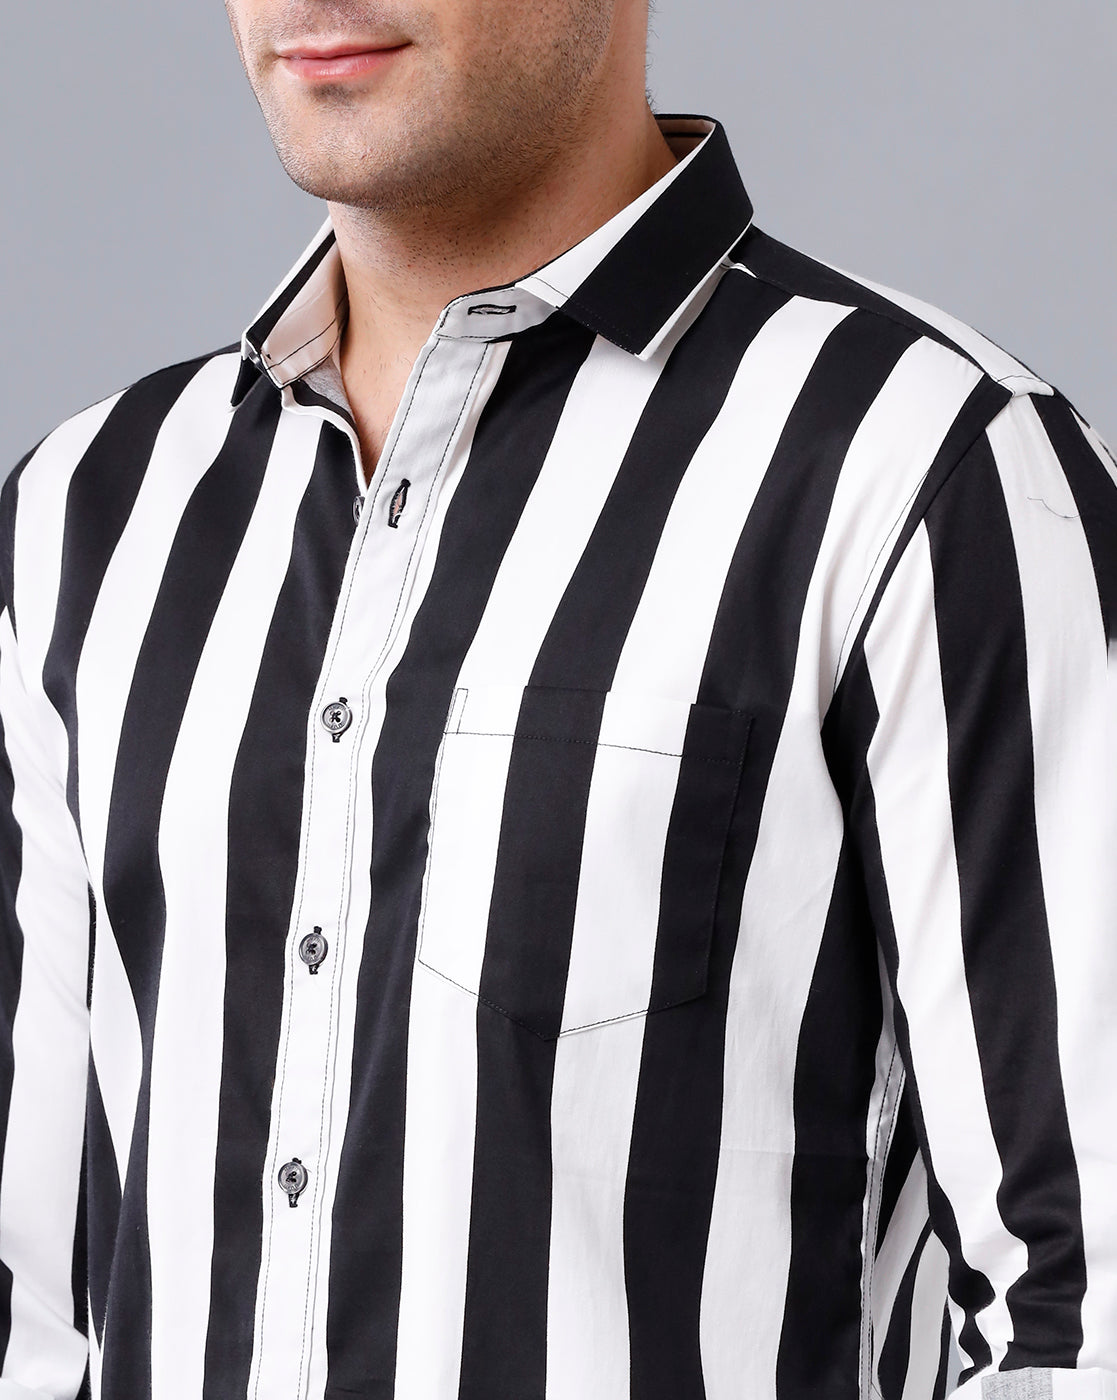 Vertical striped shirt mens